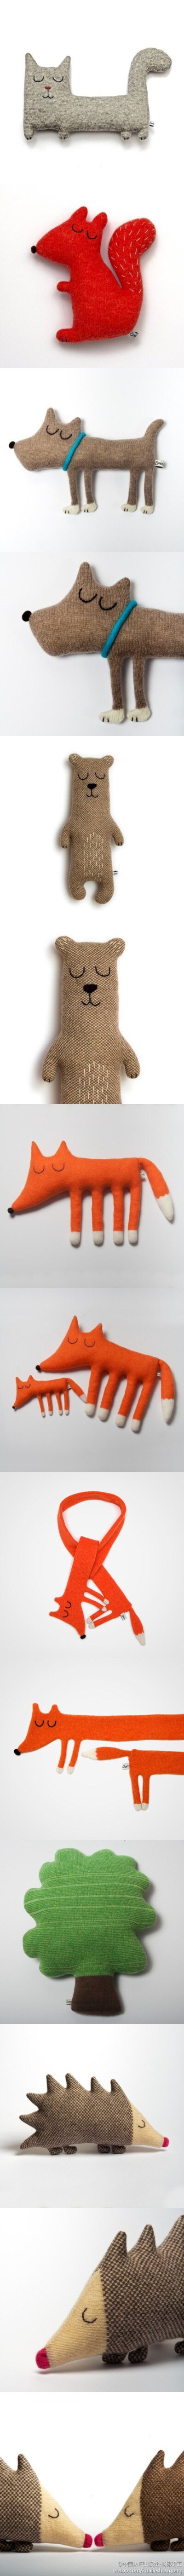 有趣的针织小动物，好想抱一只回家喔~ 来自英国伦敦设计师Sara Carr。